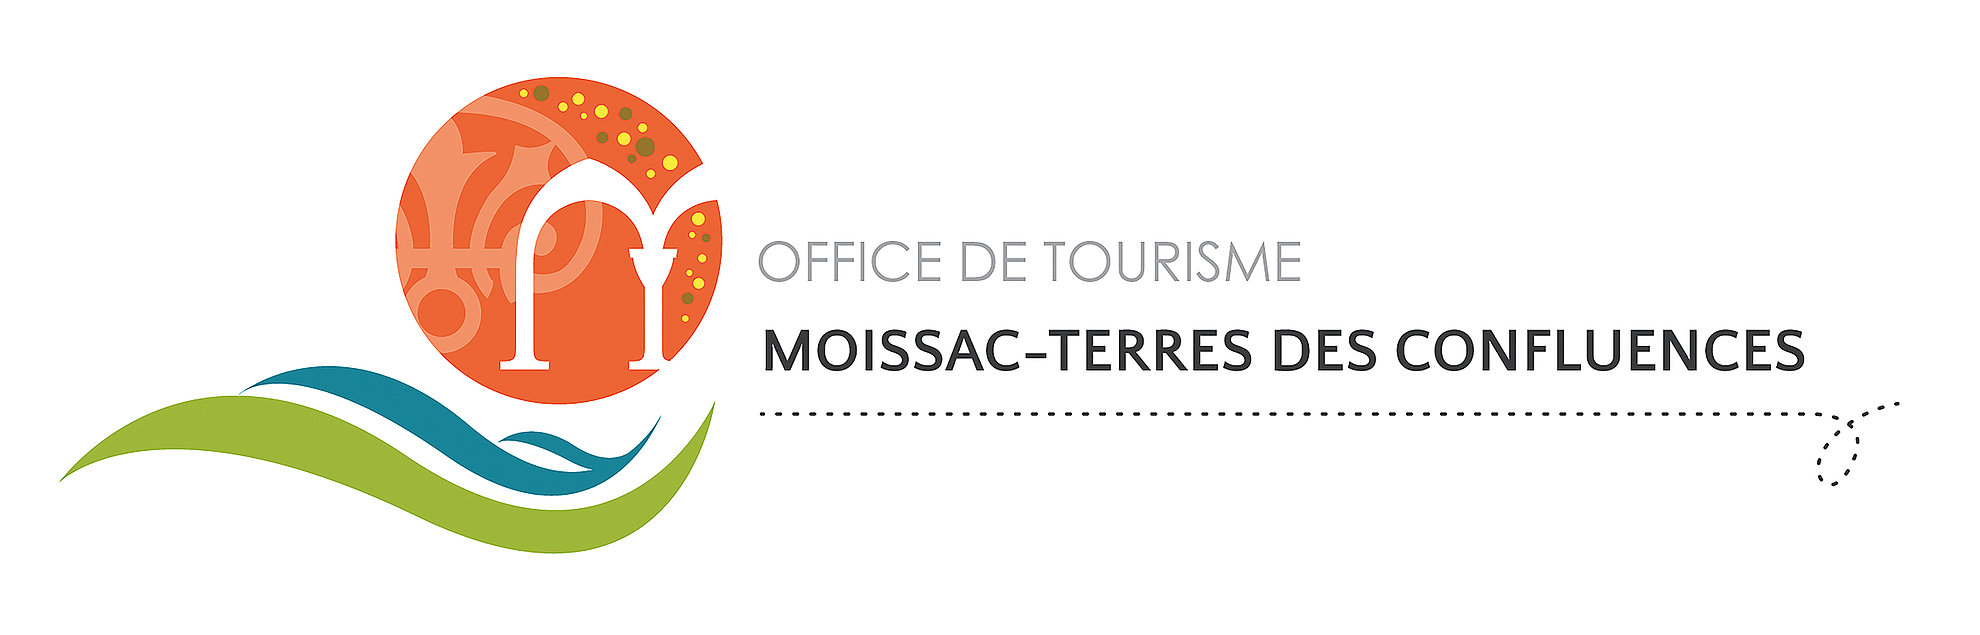 Logo de l'office de tourisme Moissac Terres des Confluences